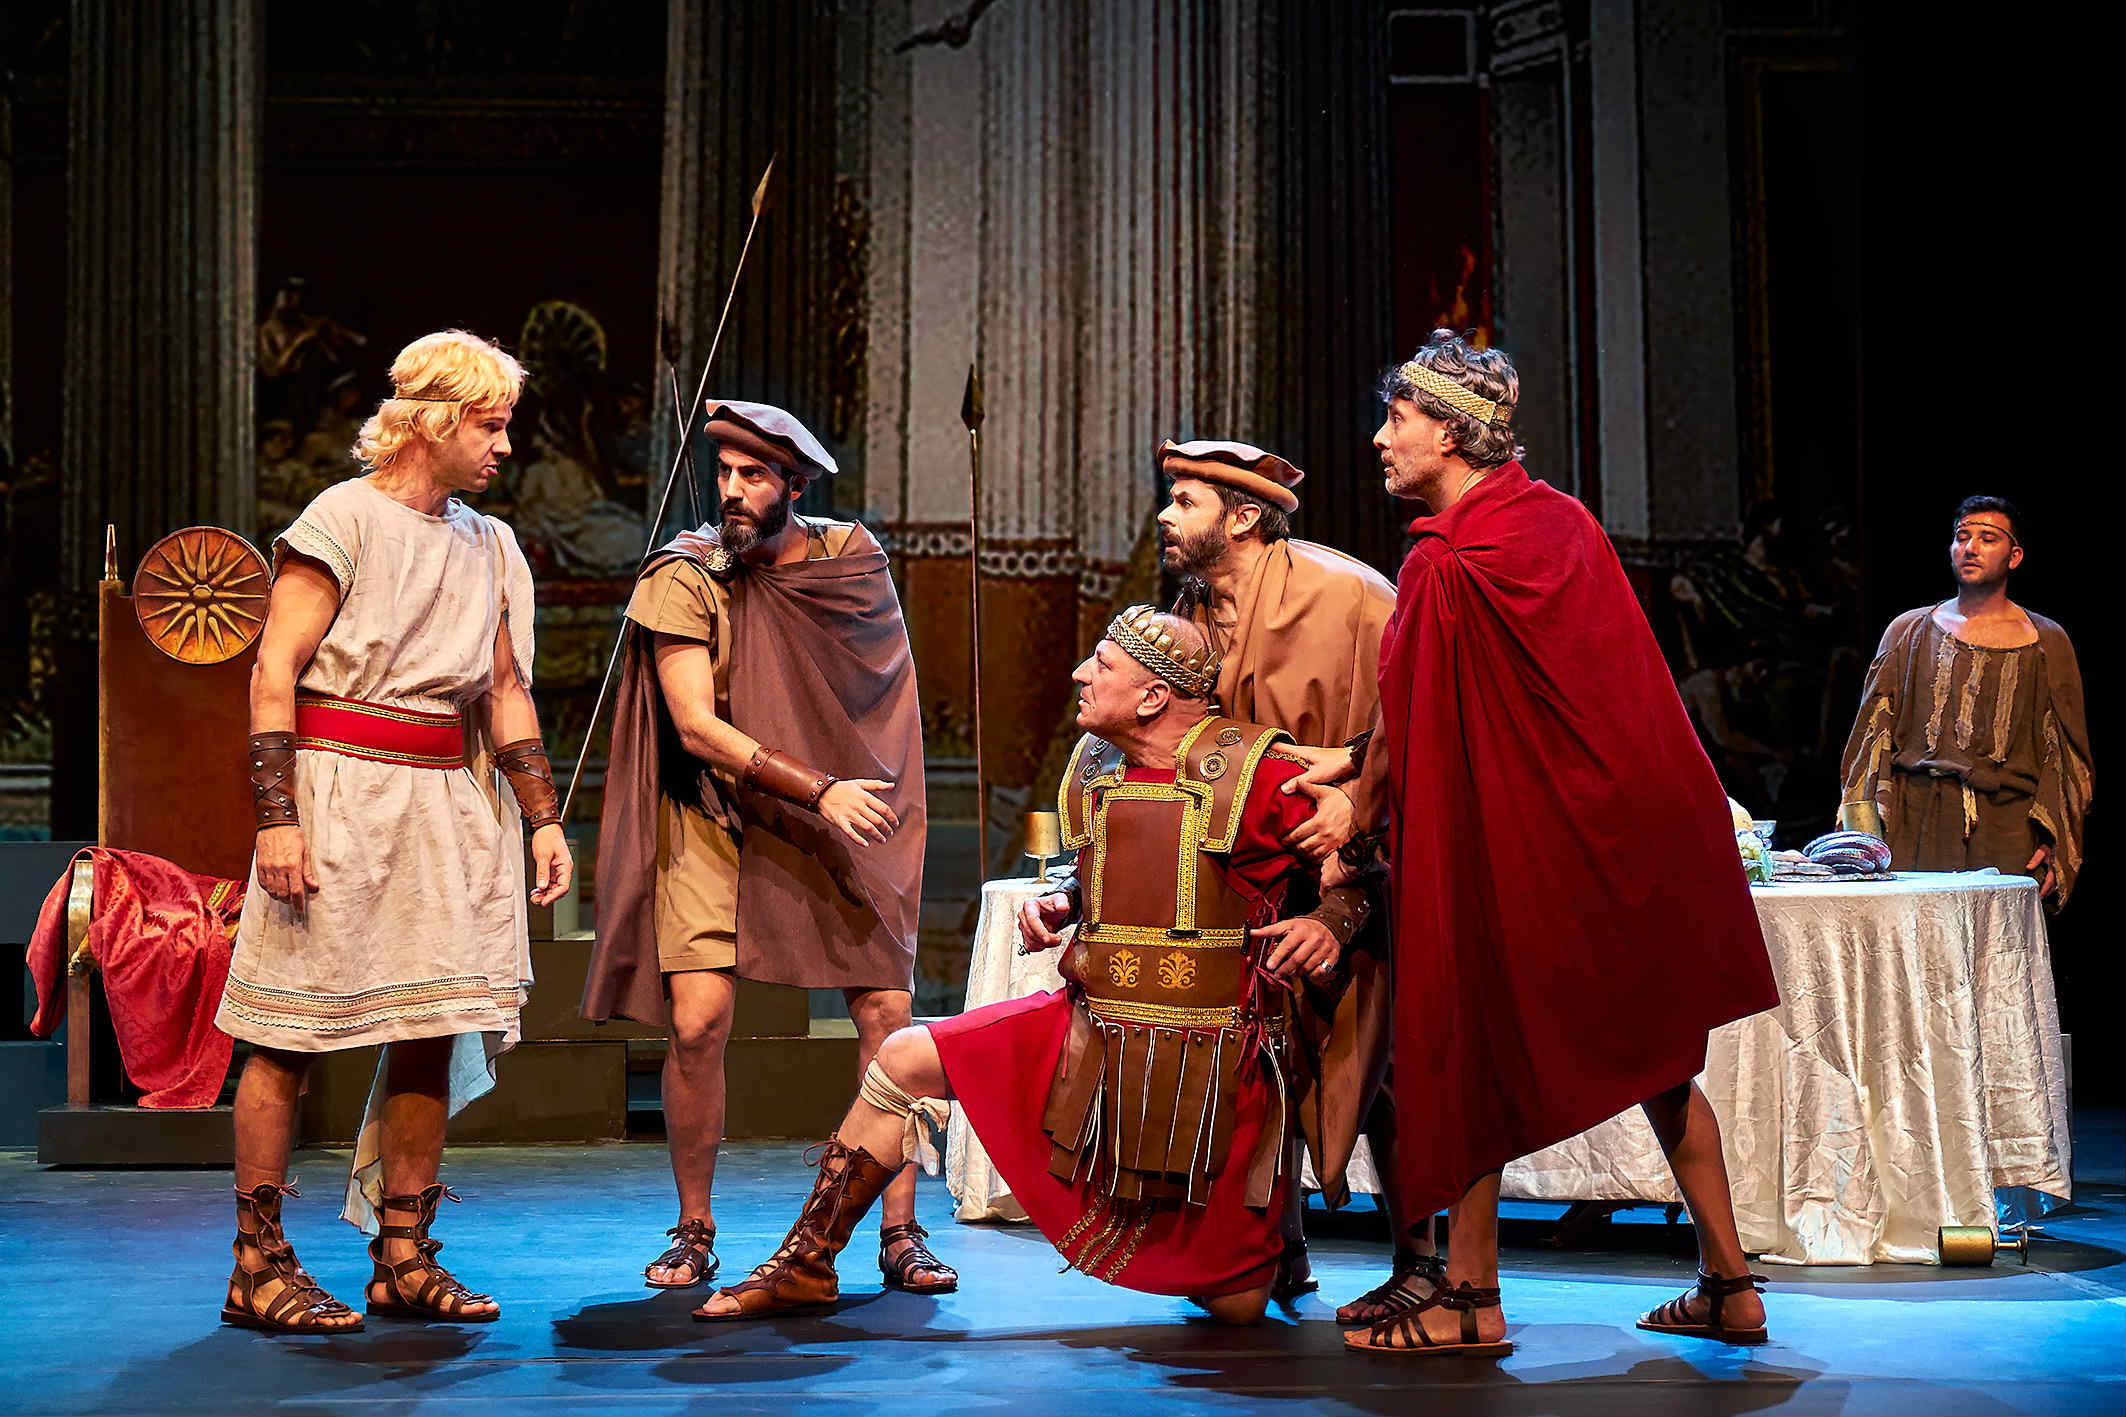 Τελευταίες παραστάσεις για το: “Μέγας Αλέξανδρος” στο Κέντρο Πολιτισμού Ελληνικός Κόσμος